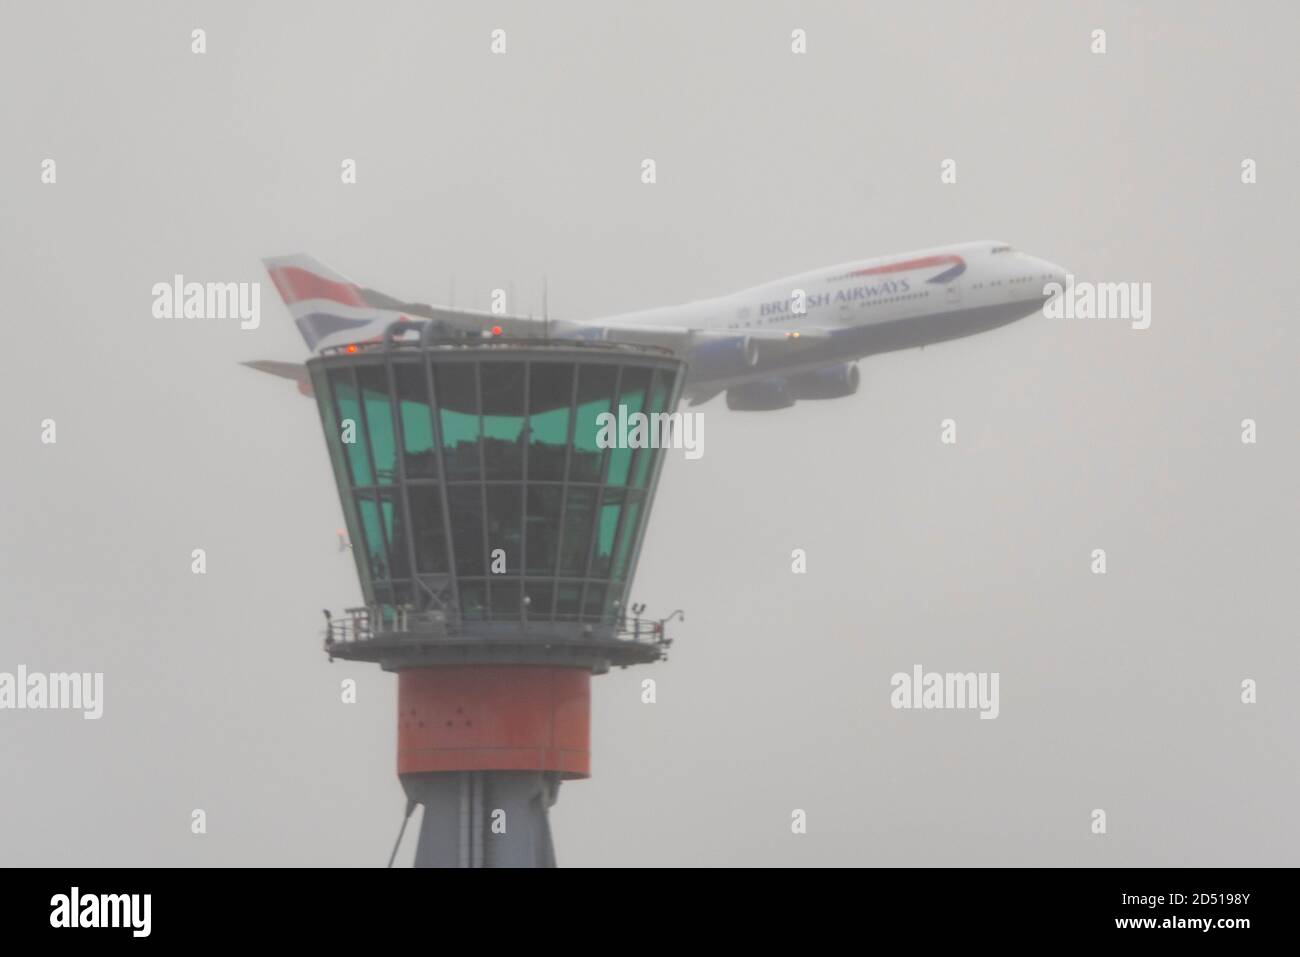 Giornata di addio per British Airways Boeing 747 aerei Jumbo Jet Airliner dopo la crisi del viaggio COVID-19. G-CIVY sorvola la torre di controllo in cielo tetro Foto Stock